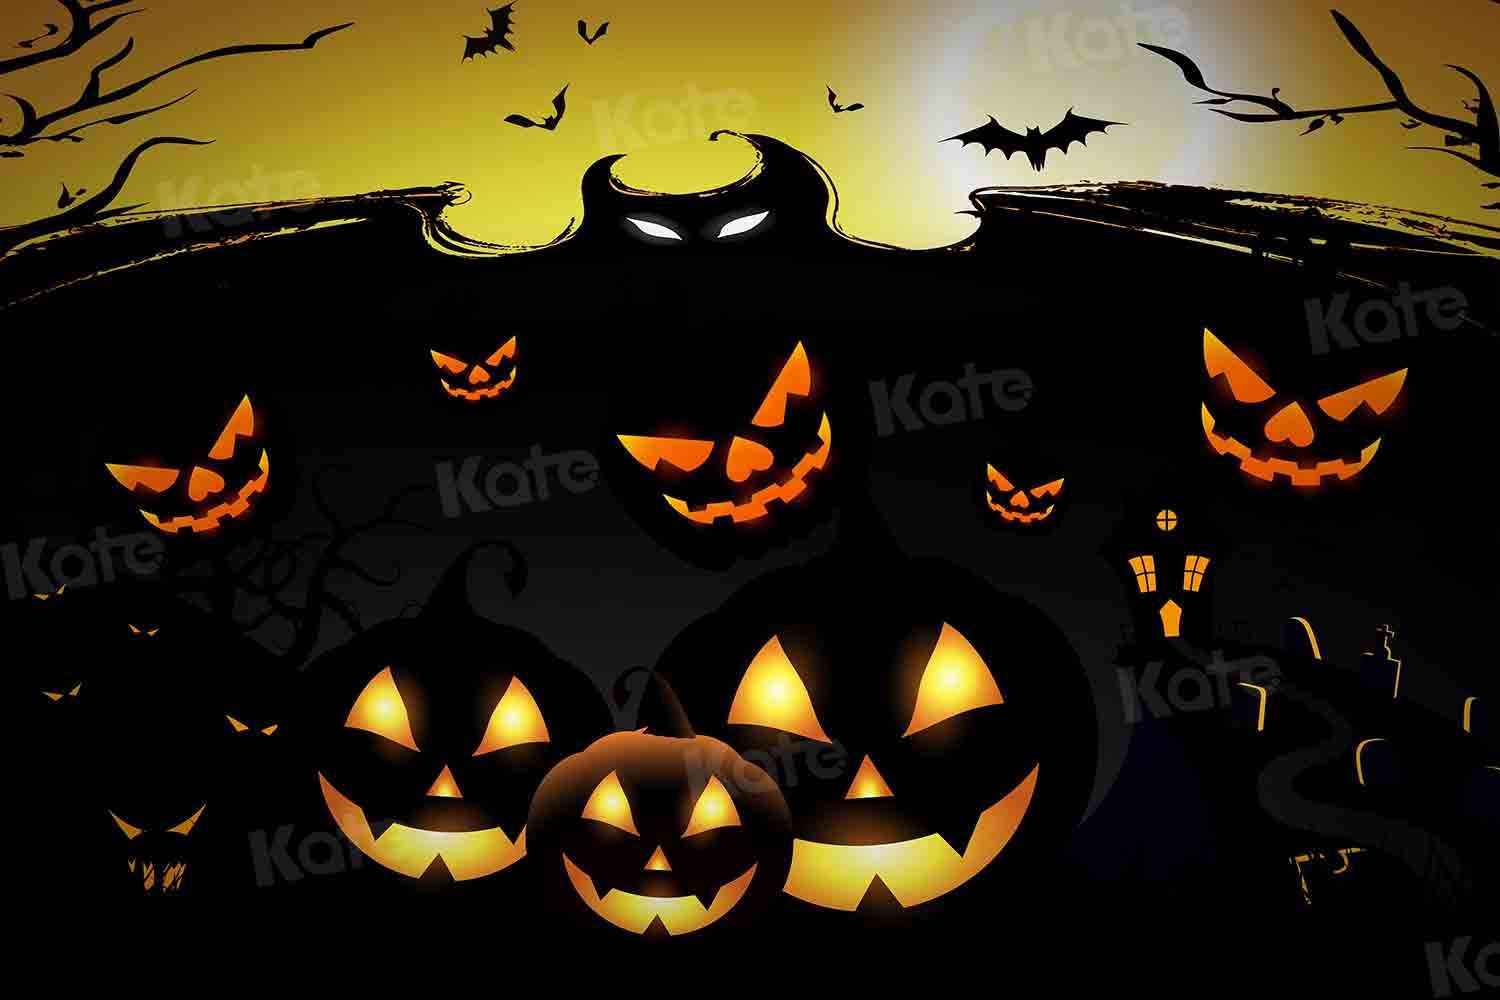 Kate Citrouille de toile de fond d'Halloween pour la photographie conçue par Chain Photographie